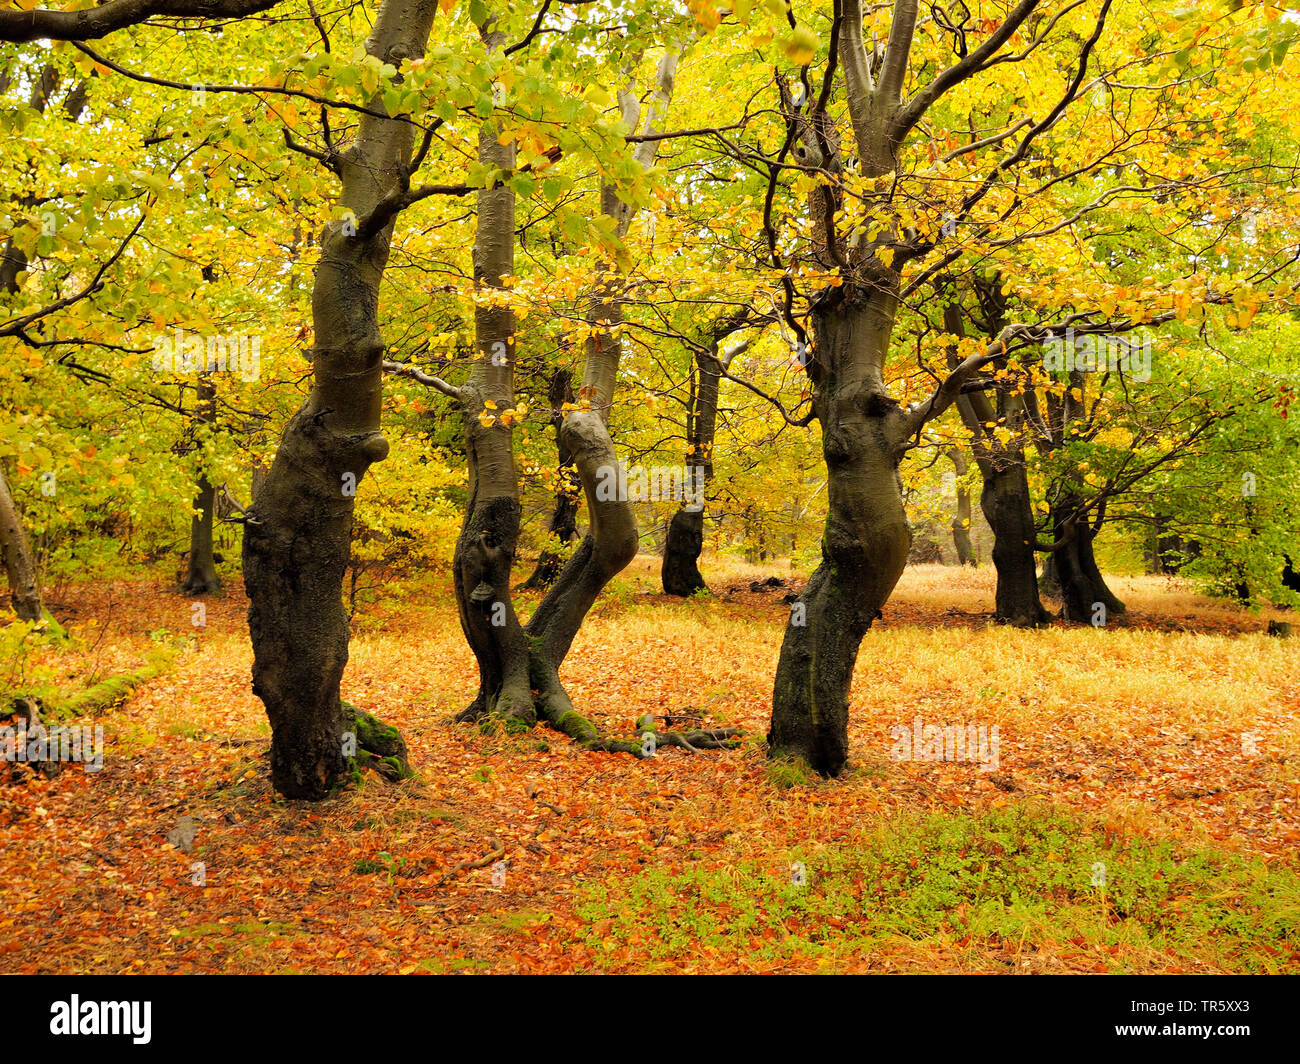 Le hêtre commun (Fagus sylvatica), vieille forêt de hêtres en automne, Bournak, République tchèque, montagnes, zones extractives Bournak, Mikulov Banque D'Images